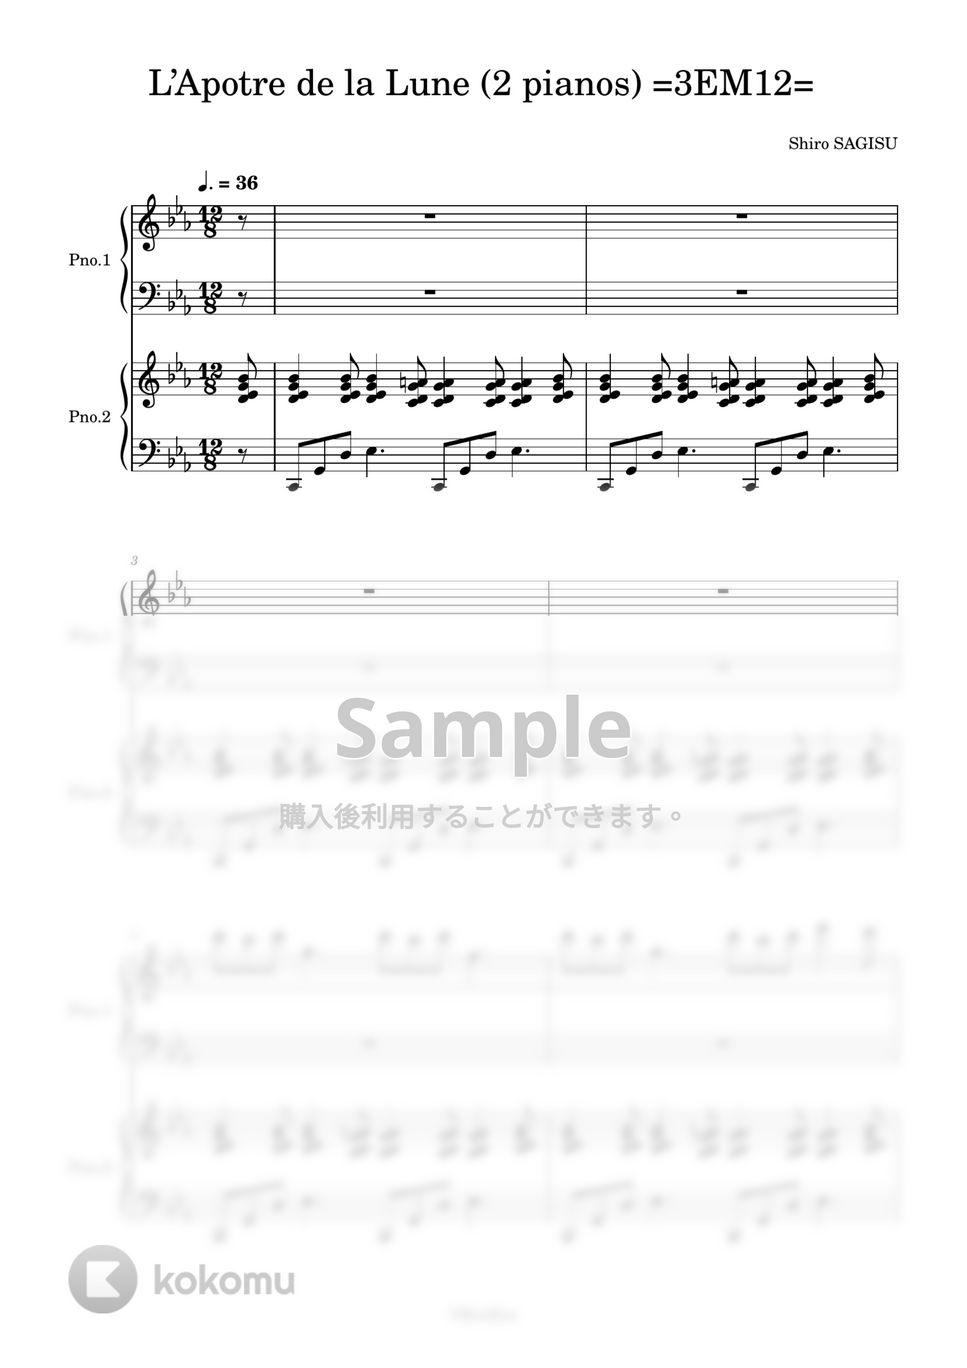 鷺巣詩郎 - L’Apotre de la Lune (2 pianos) =3EM12= (エヴァンゲリオンQ / EVANGELION 3.0"YOU CAN (NOT) REDO") by KenBan